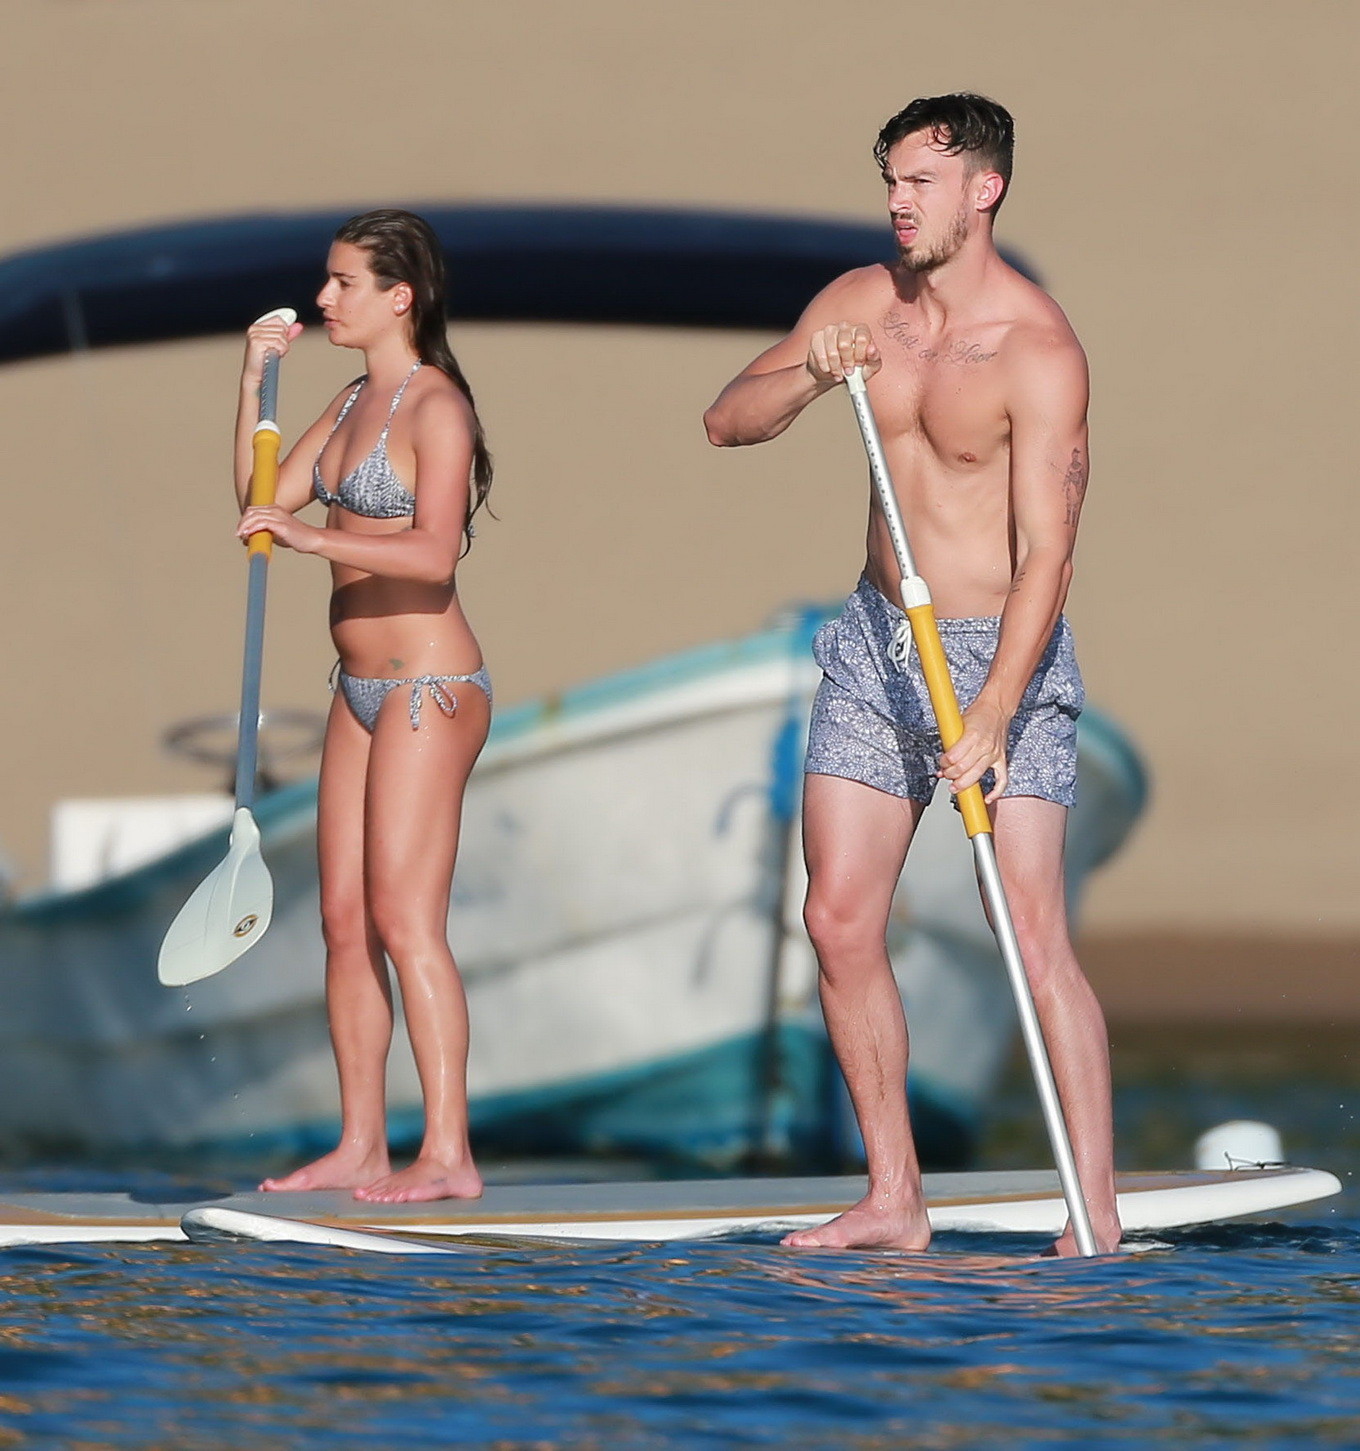 Lea michele en un diminuto bikini monocromático haciendo paddeboard en la playa de méxico
 #75176574